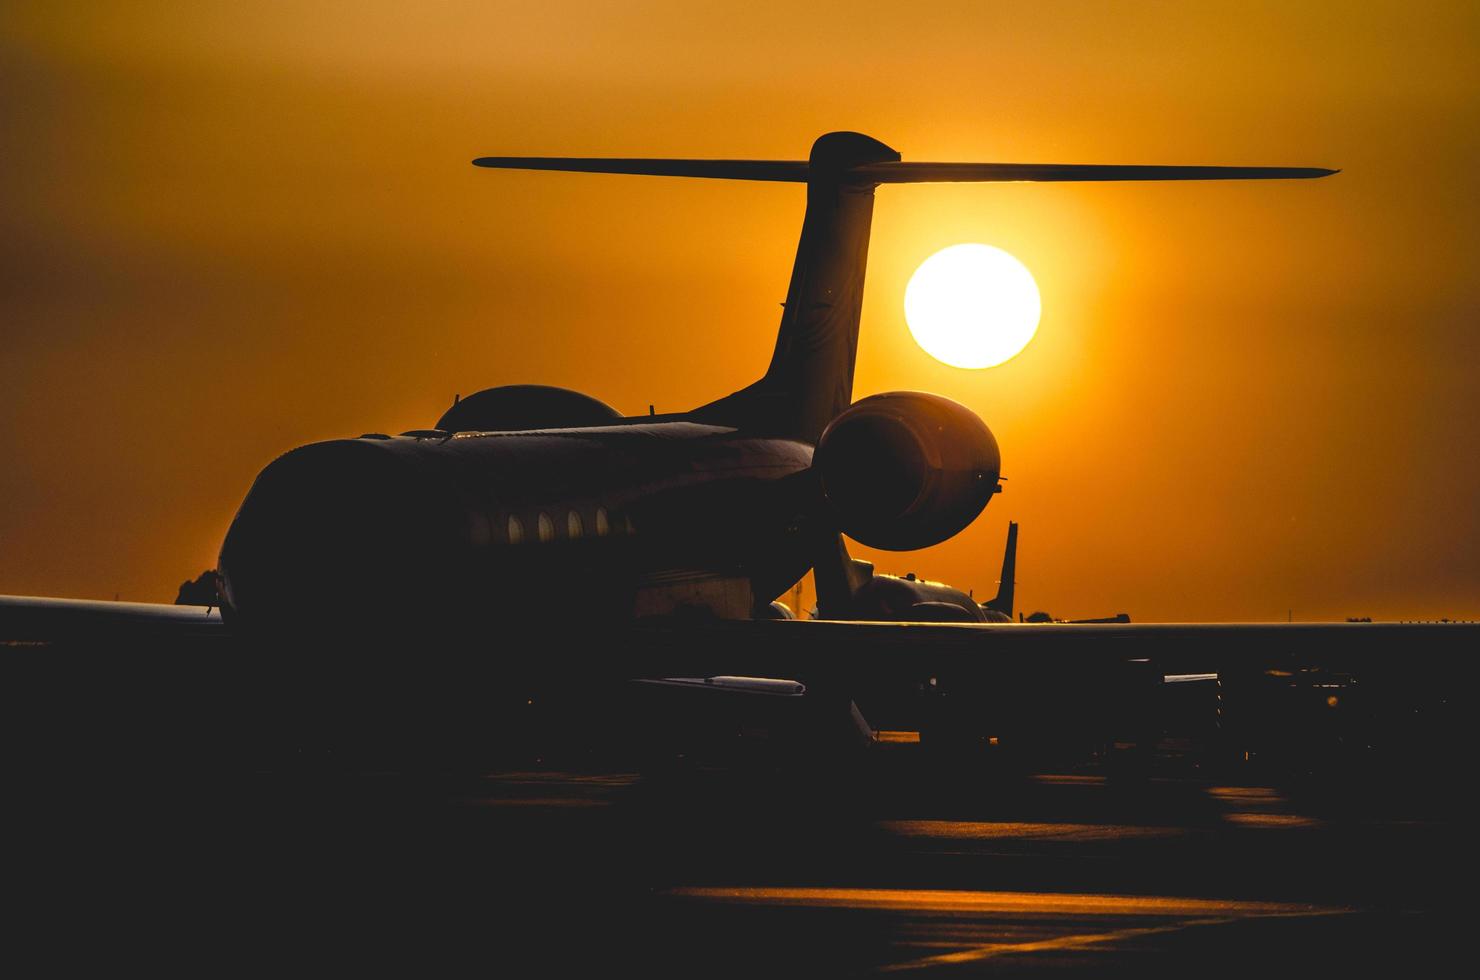 silueta de avión durante la puesta de sol foto